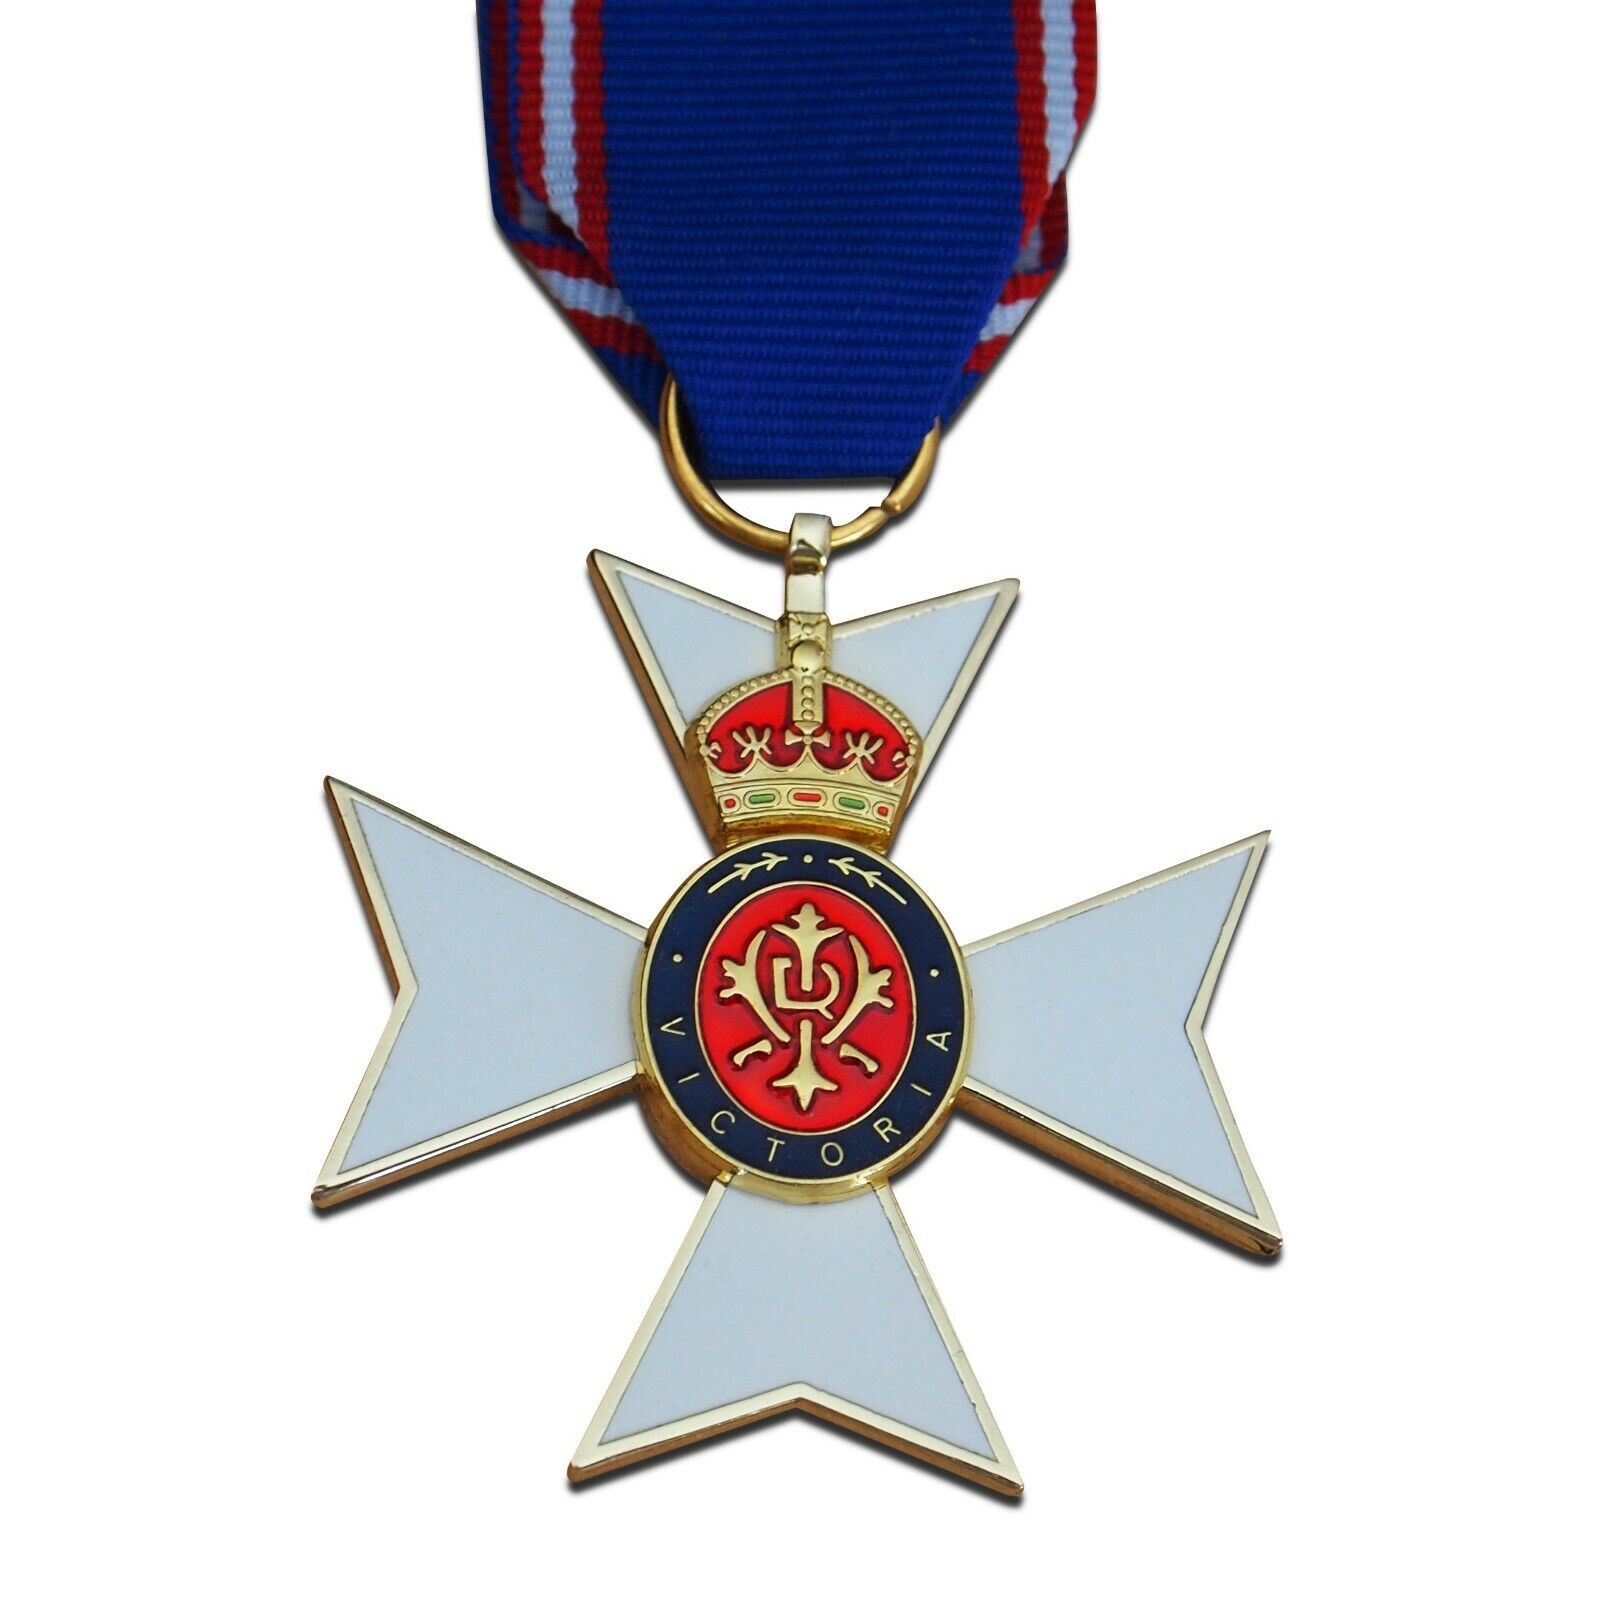 ROYAL VICTORIAN ORDER CROSS MEDAL RVO Maltese Cross British Empire Medal Copy 